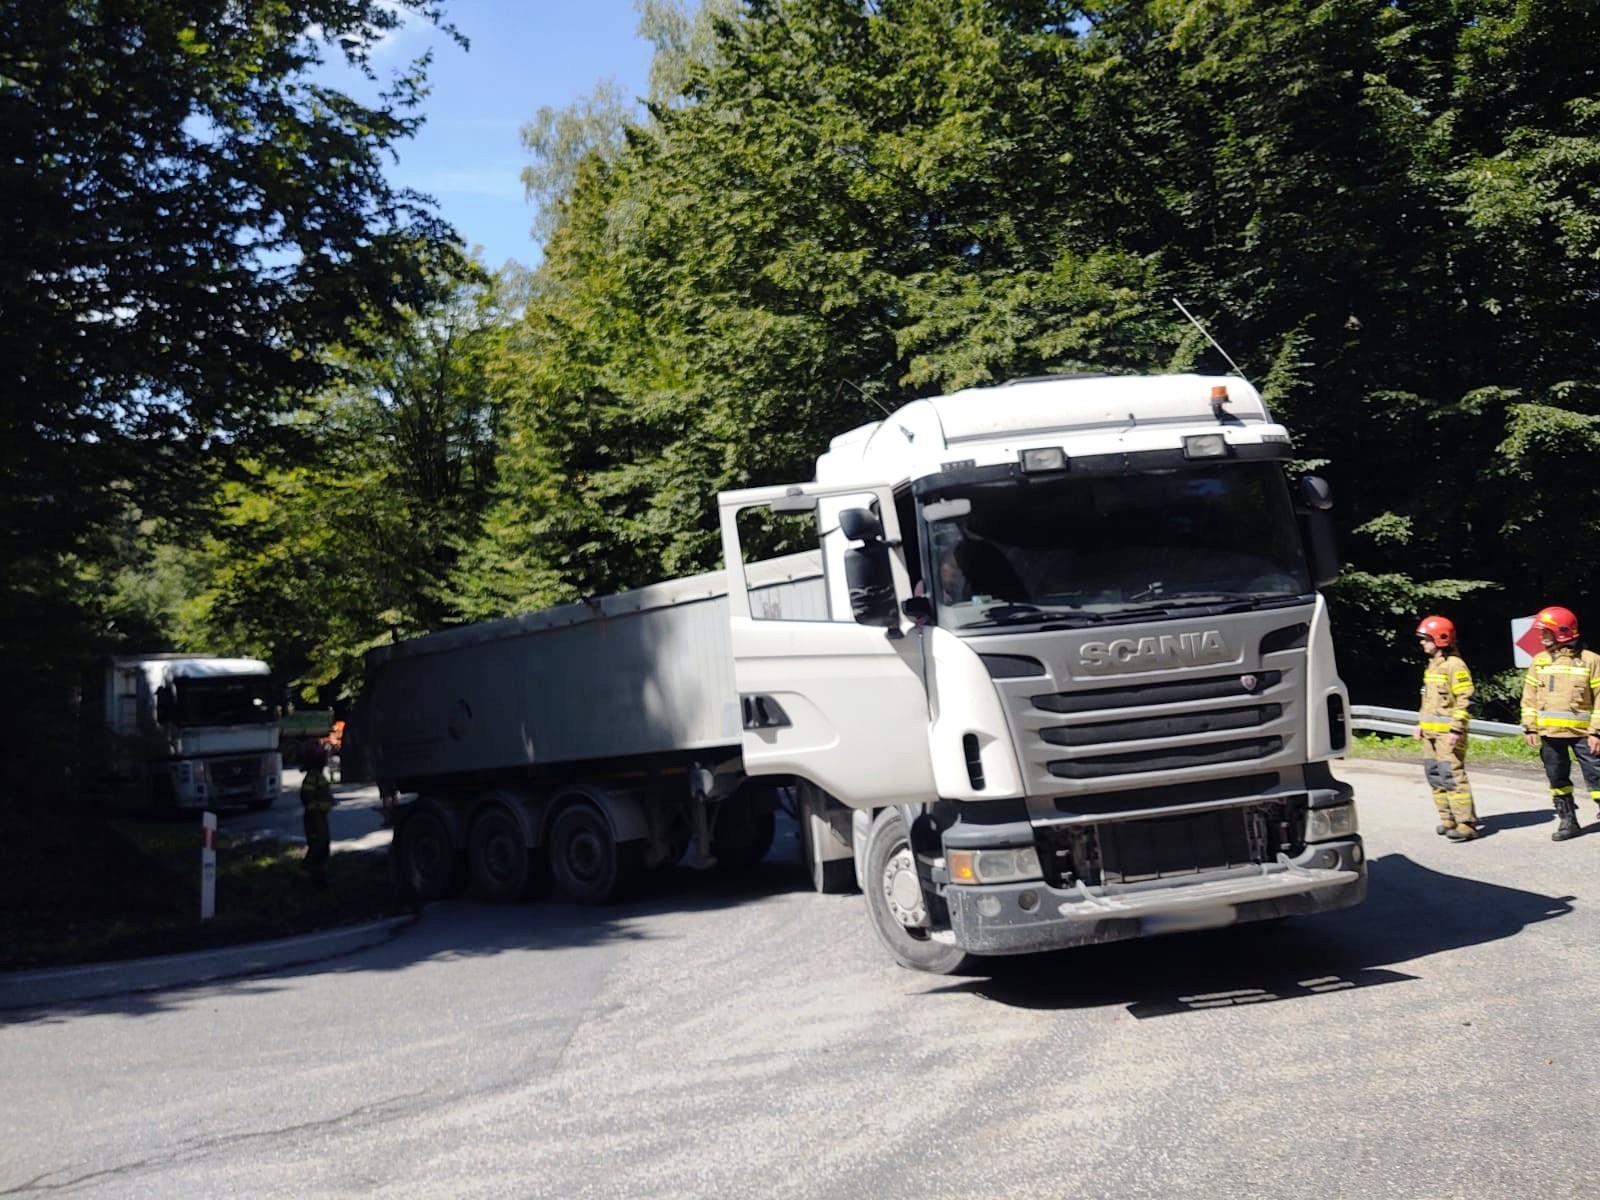 samochód ciężarowy Bartkowa-Posadowa